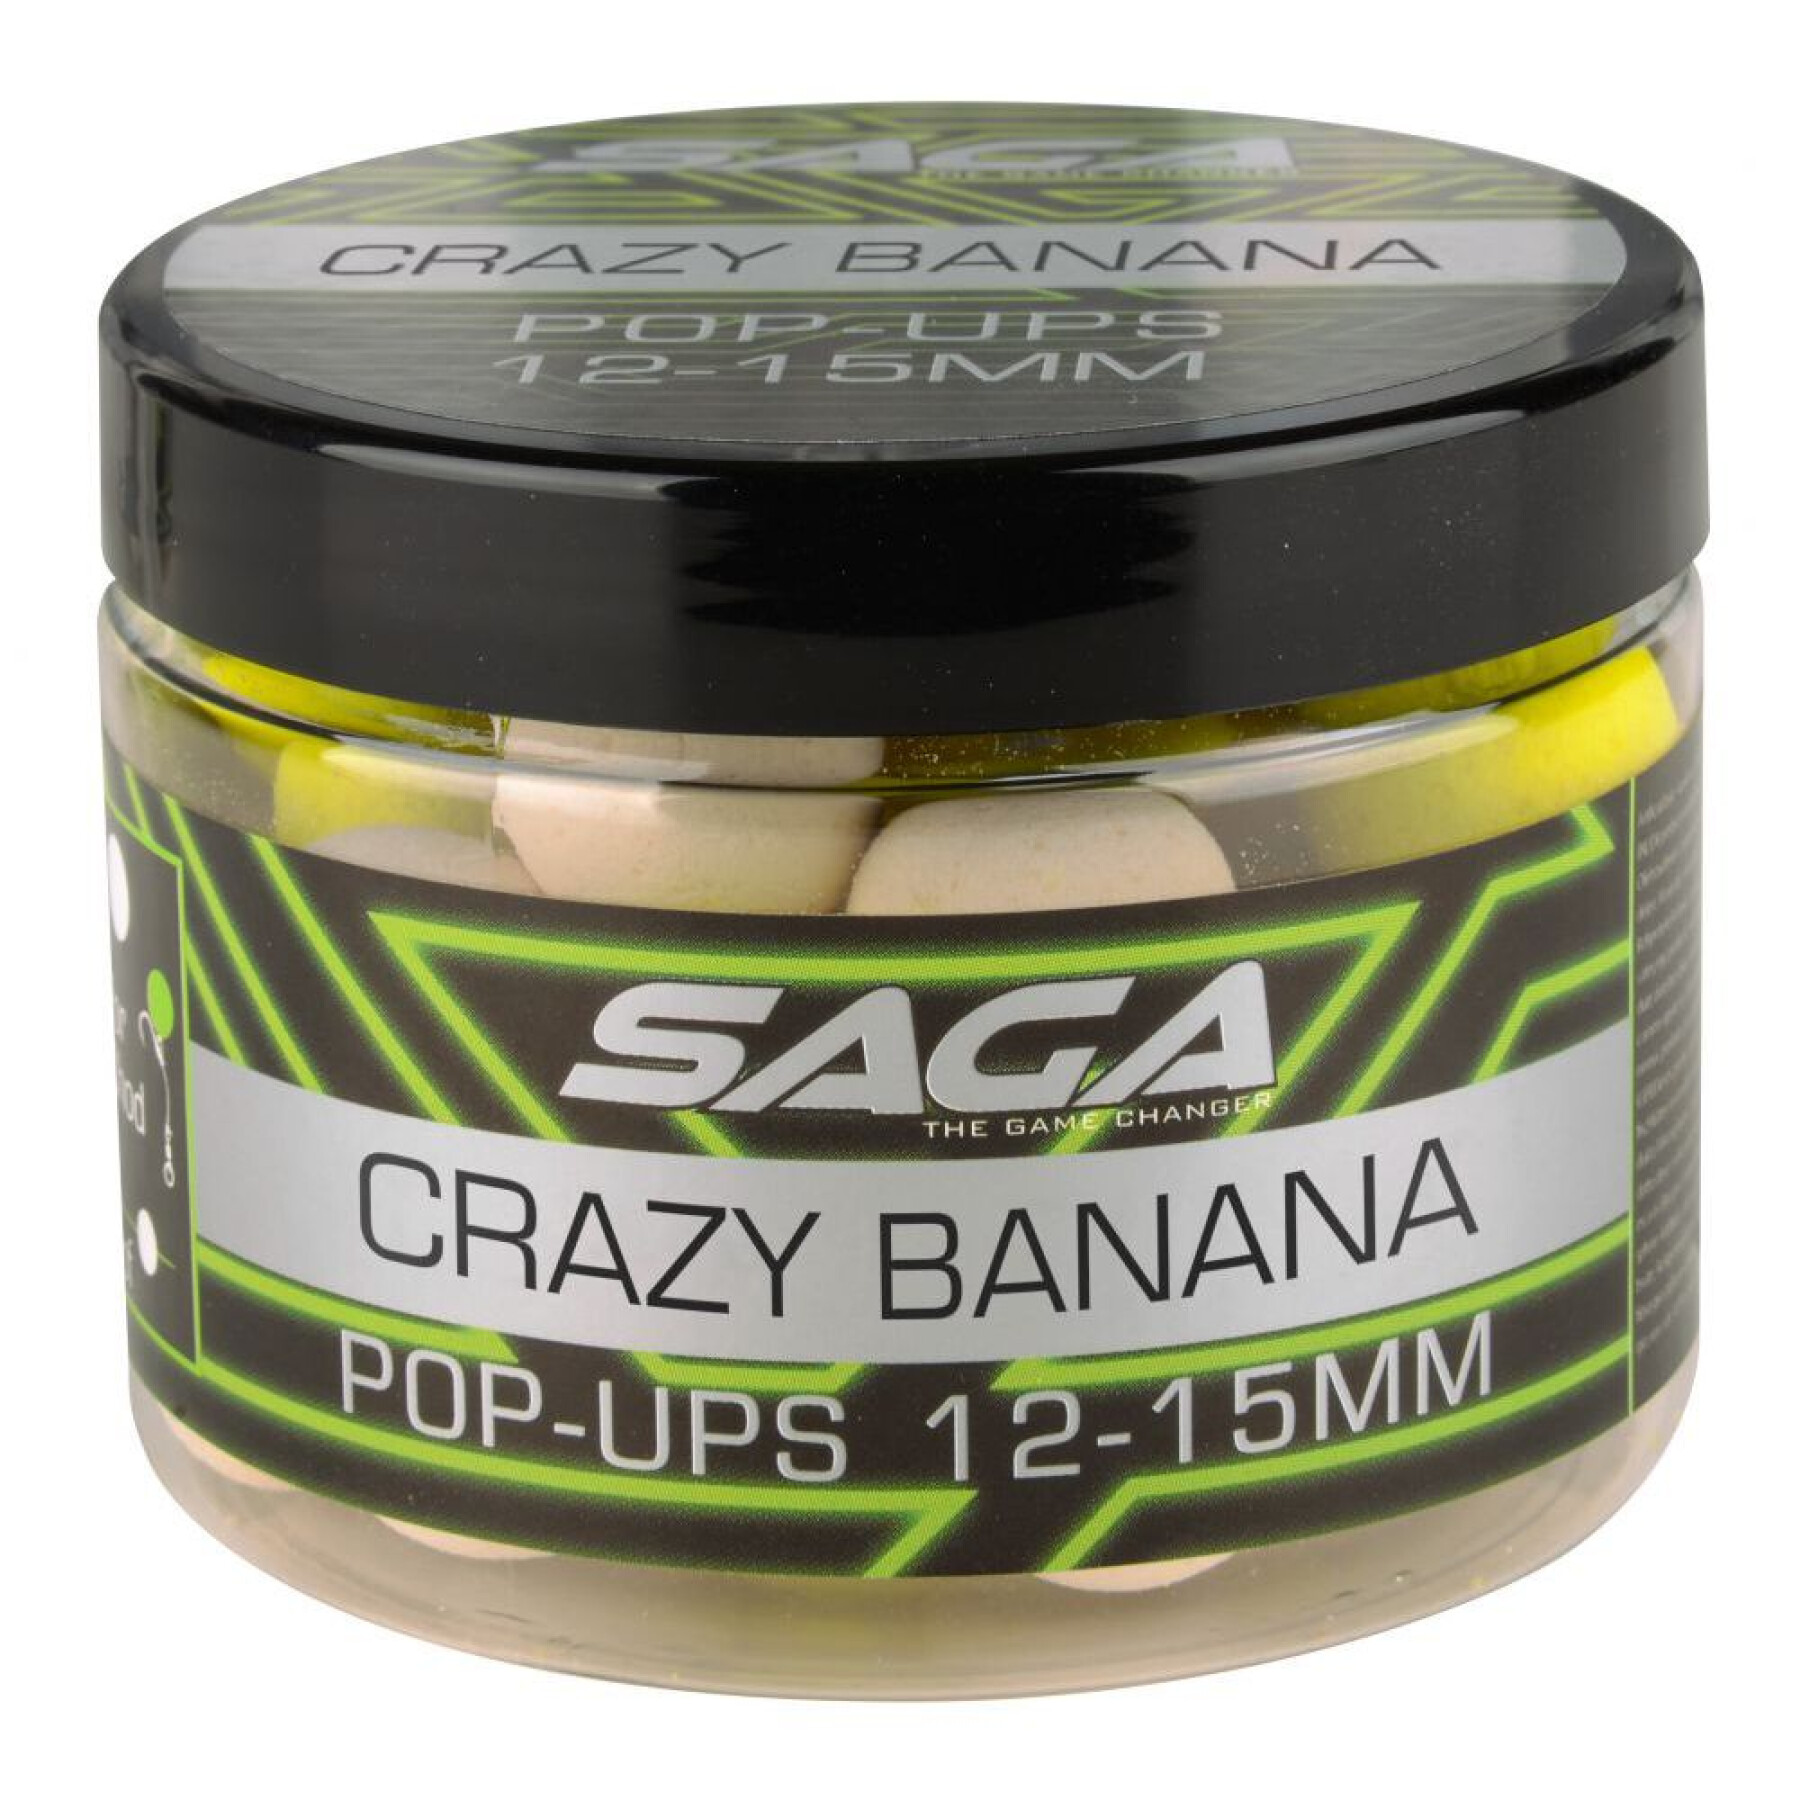 Pop-Ups Saga Crazy Banana Pop-Ups 50g